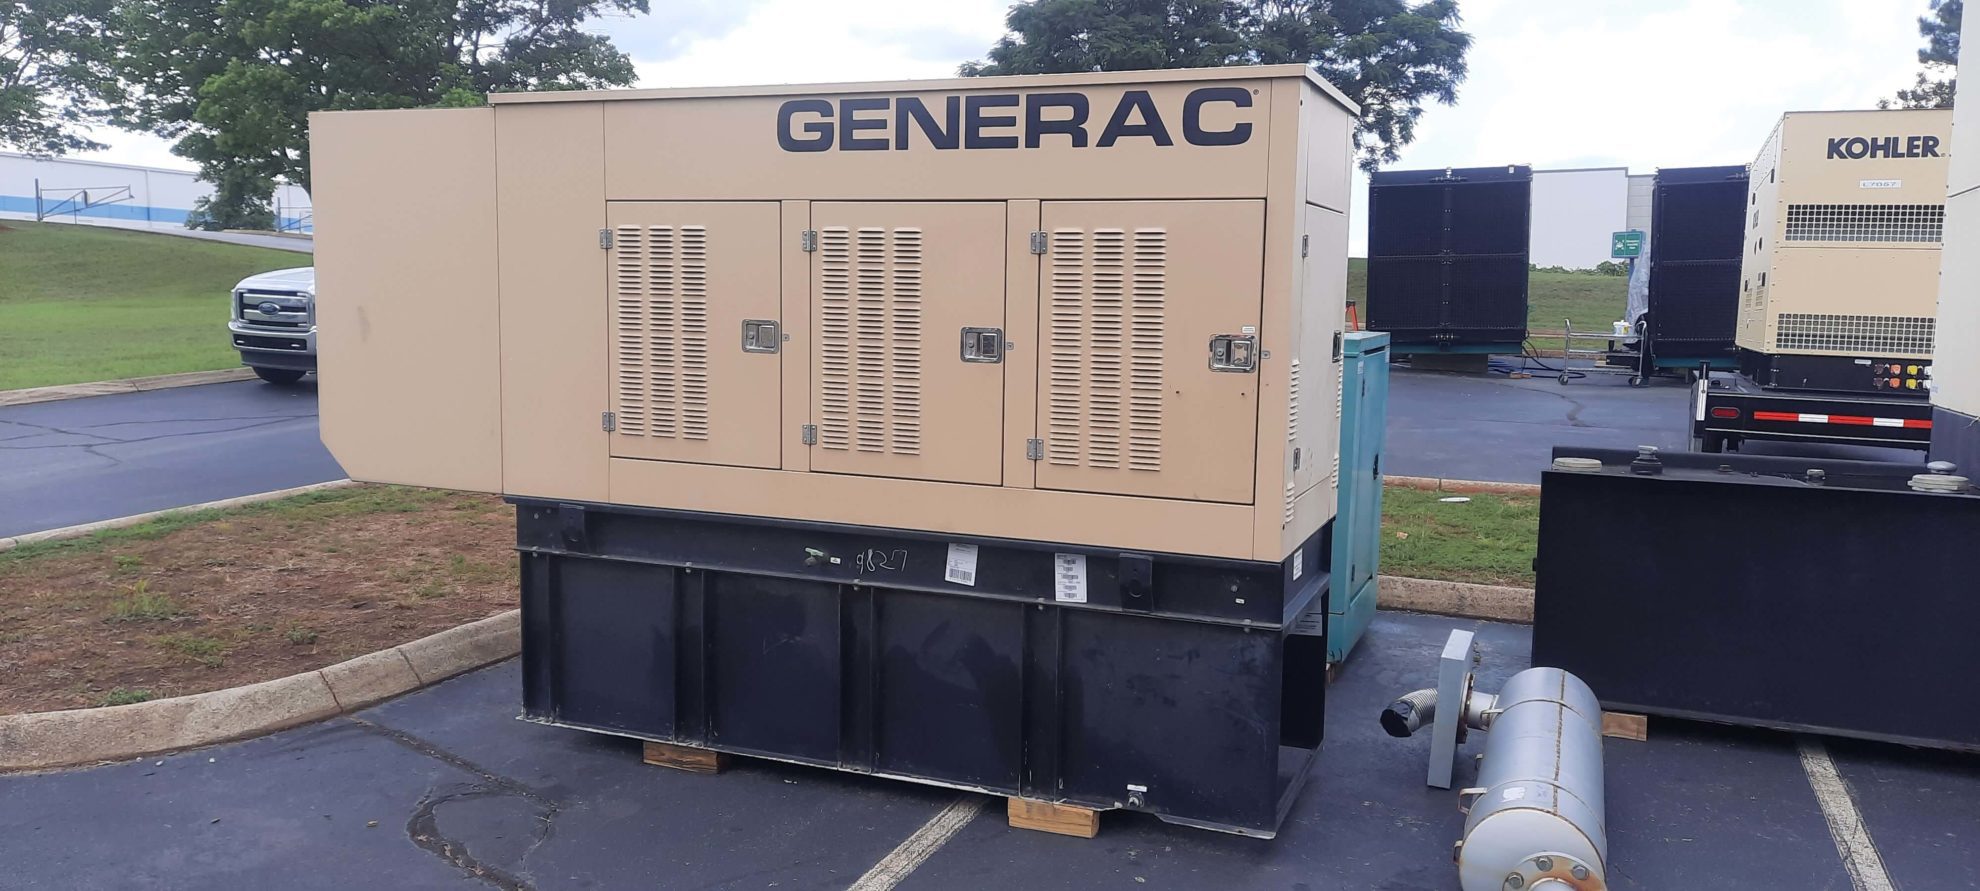 135 kW Generac Diesel Generator